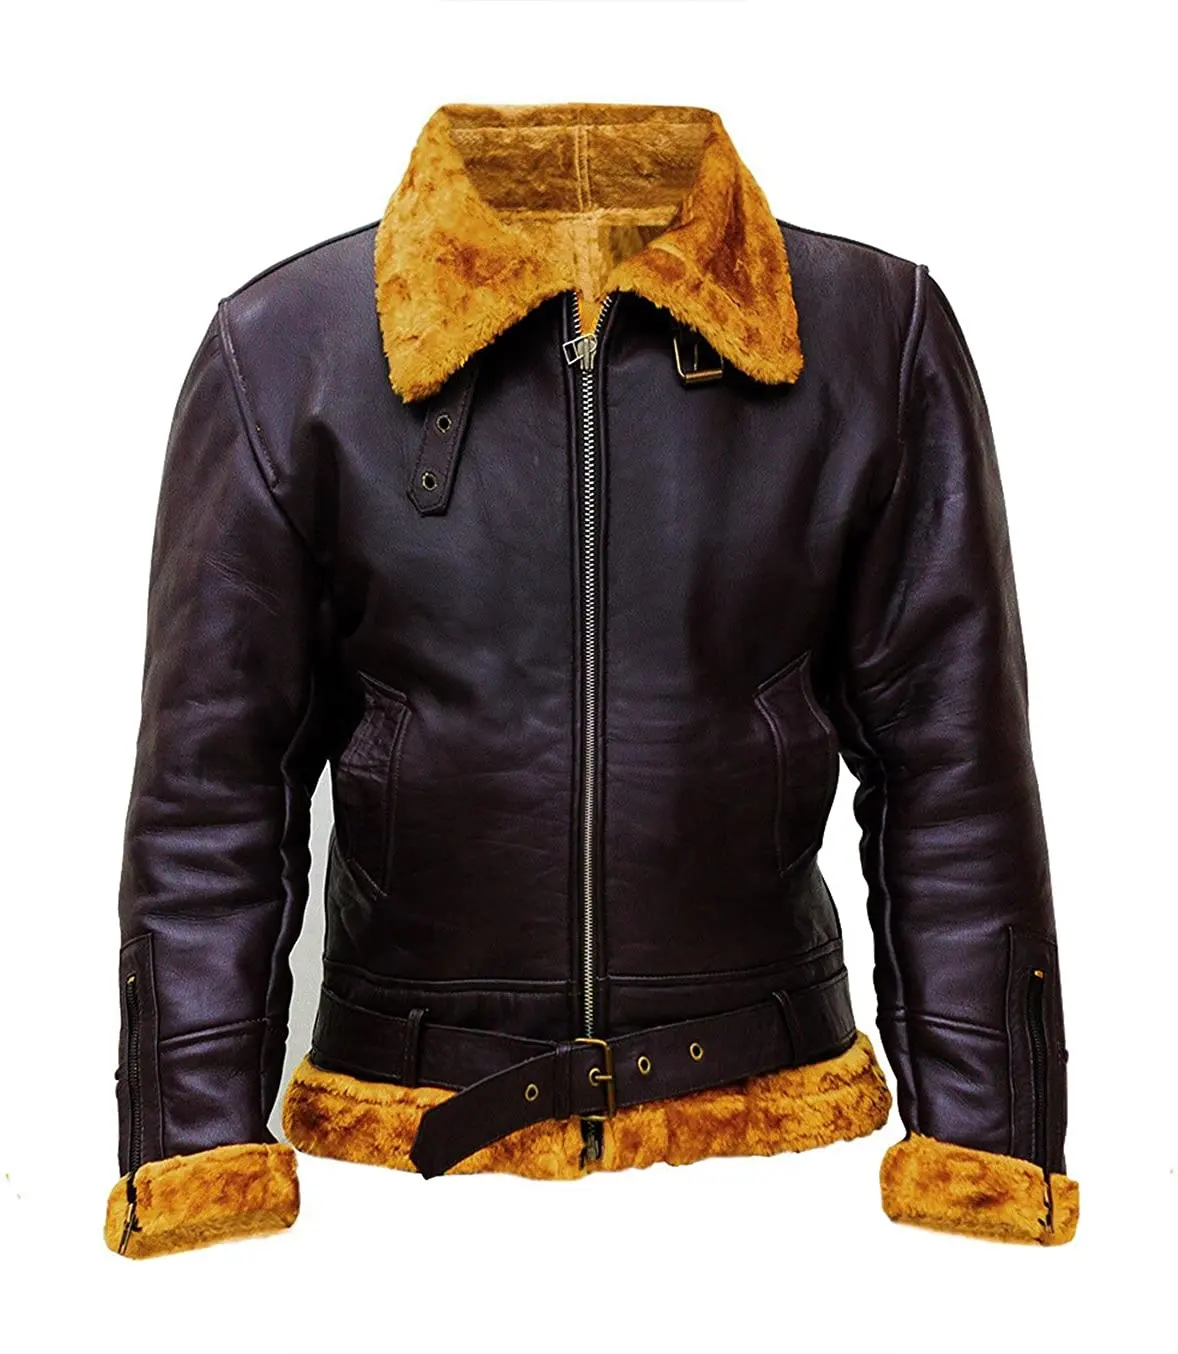 100% uomini veri, s giacca di pelle invernale con fibbia stile tracolla e larghi colletti giacca con tasche scaldamani (LJ-528)